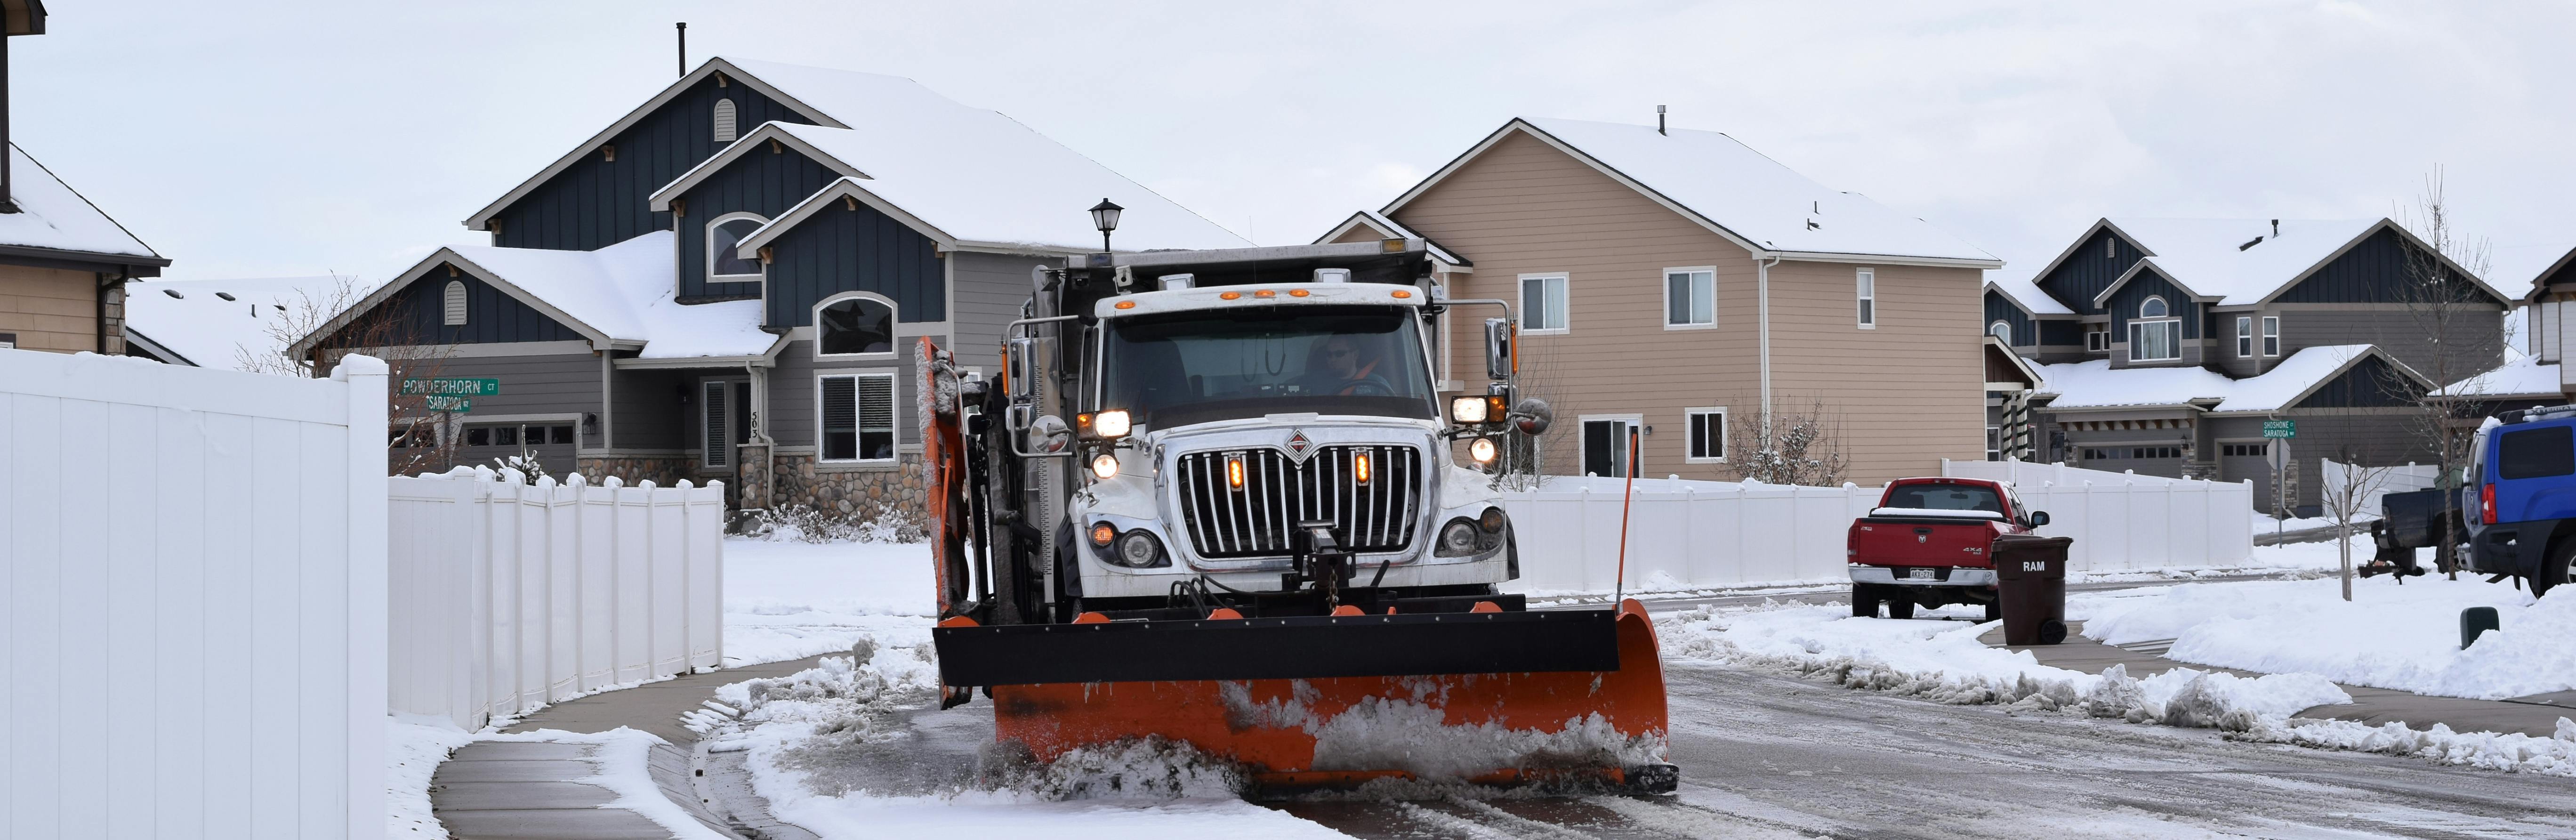 Windsor snow plow in a residential neighborhood